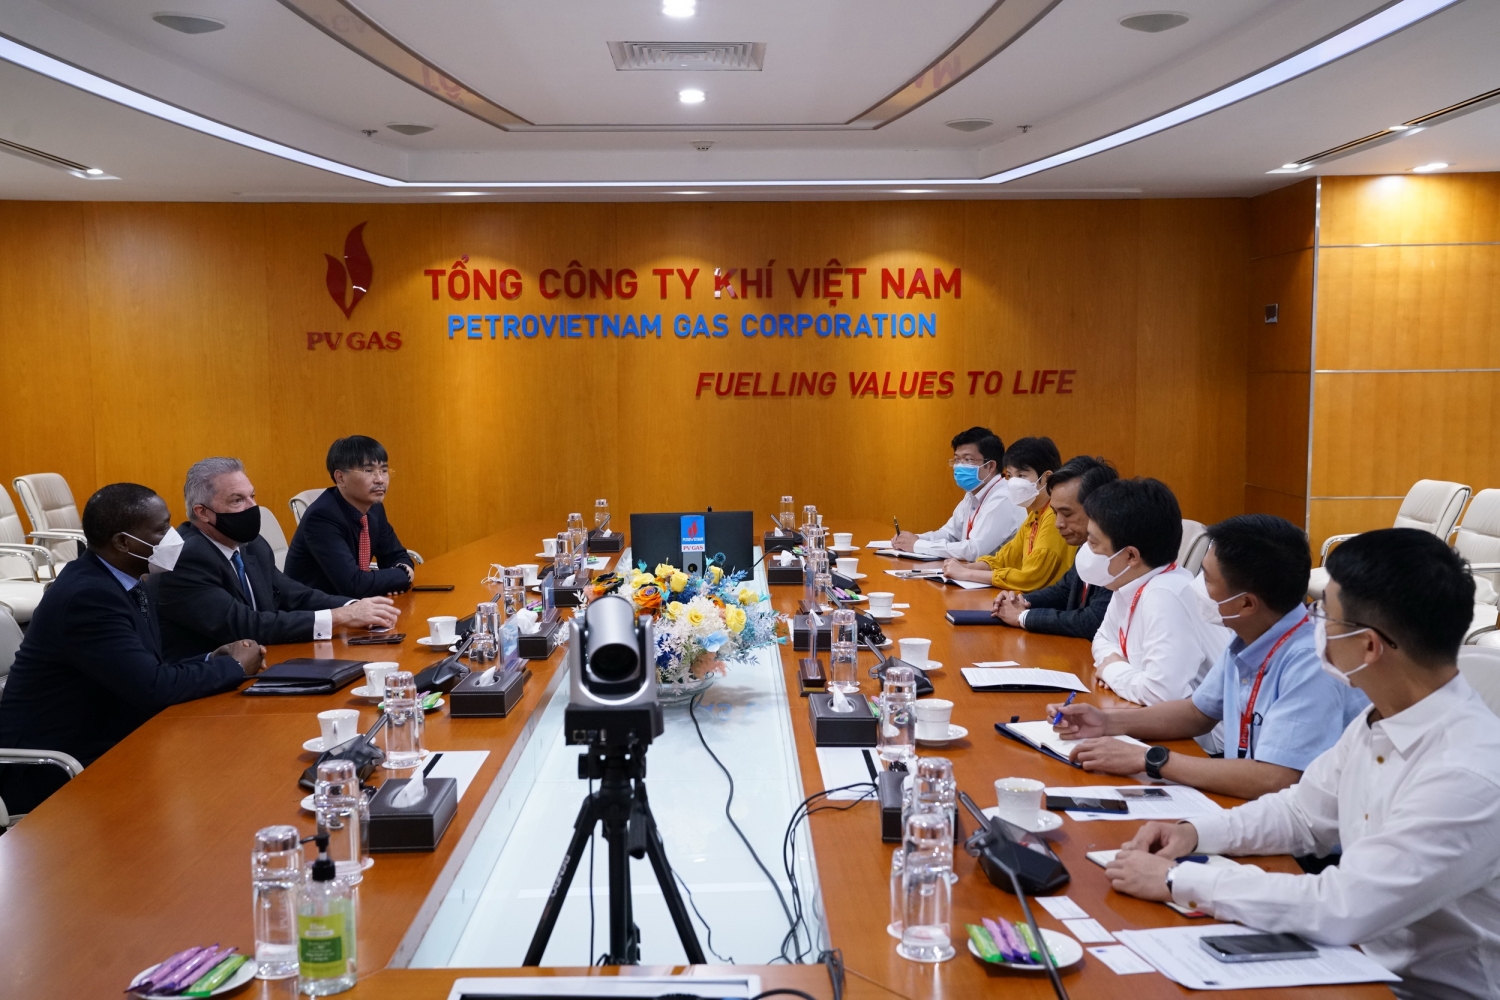 Tổng giám đốc PV GAS tiếp các đối tác đến tìm hiểu và phối hợp phát triển ngành công nghiệp khí Việt Nam